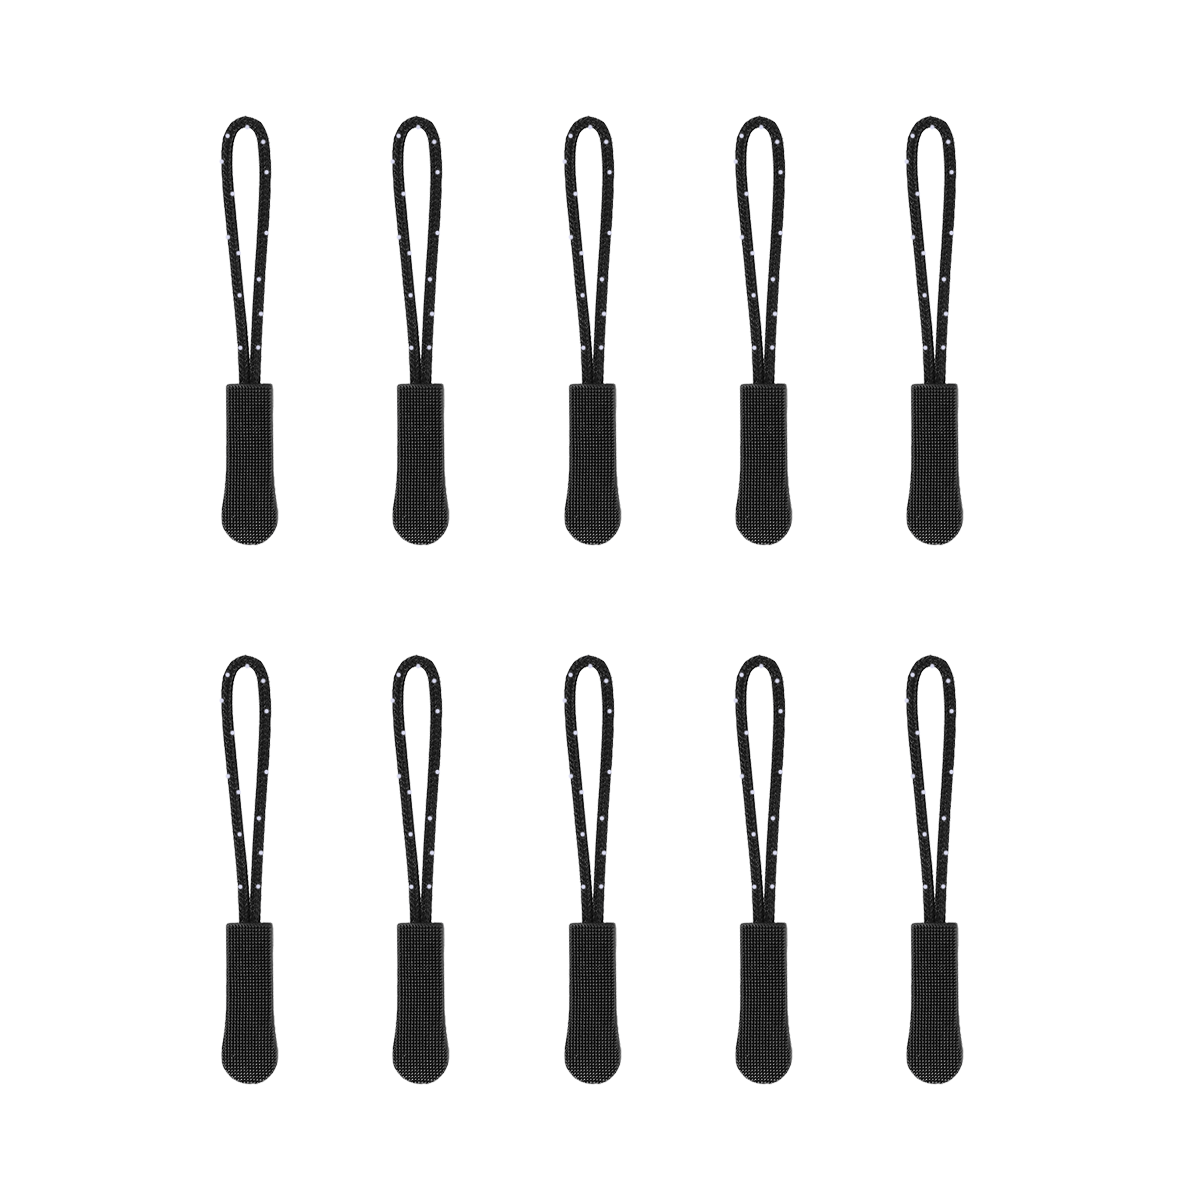 Dadam Zipper Pull Replacement Set of 10 - Durable Zipper Puller